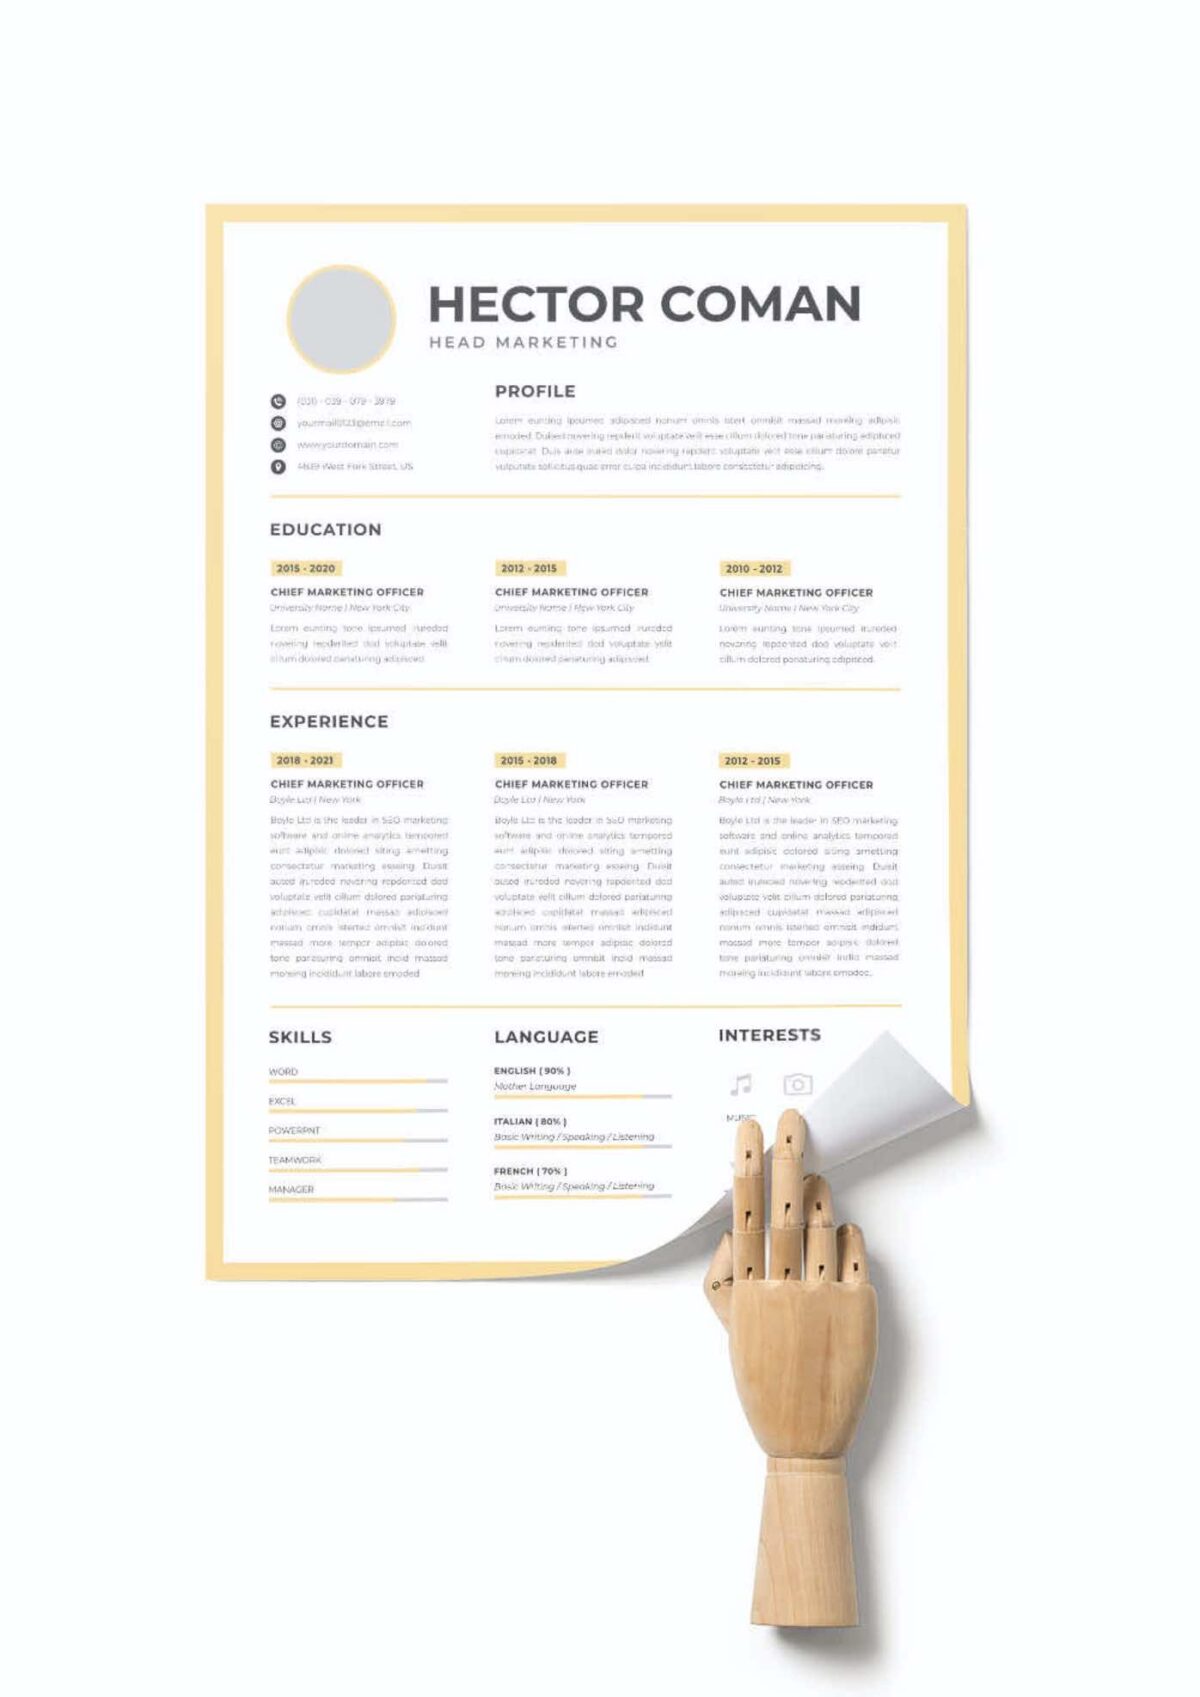 CV #41 Hector Coman